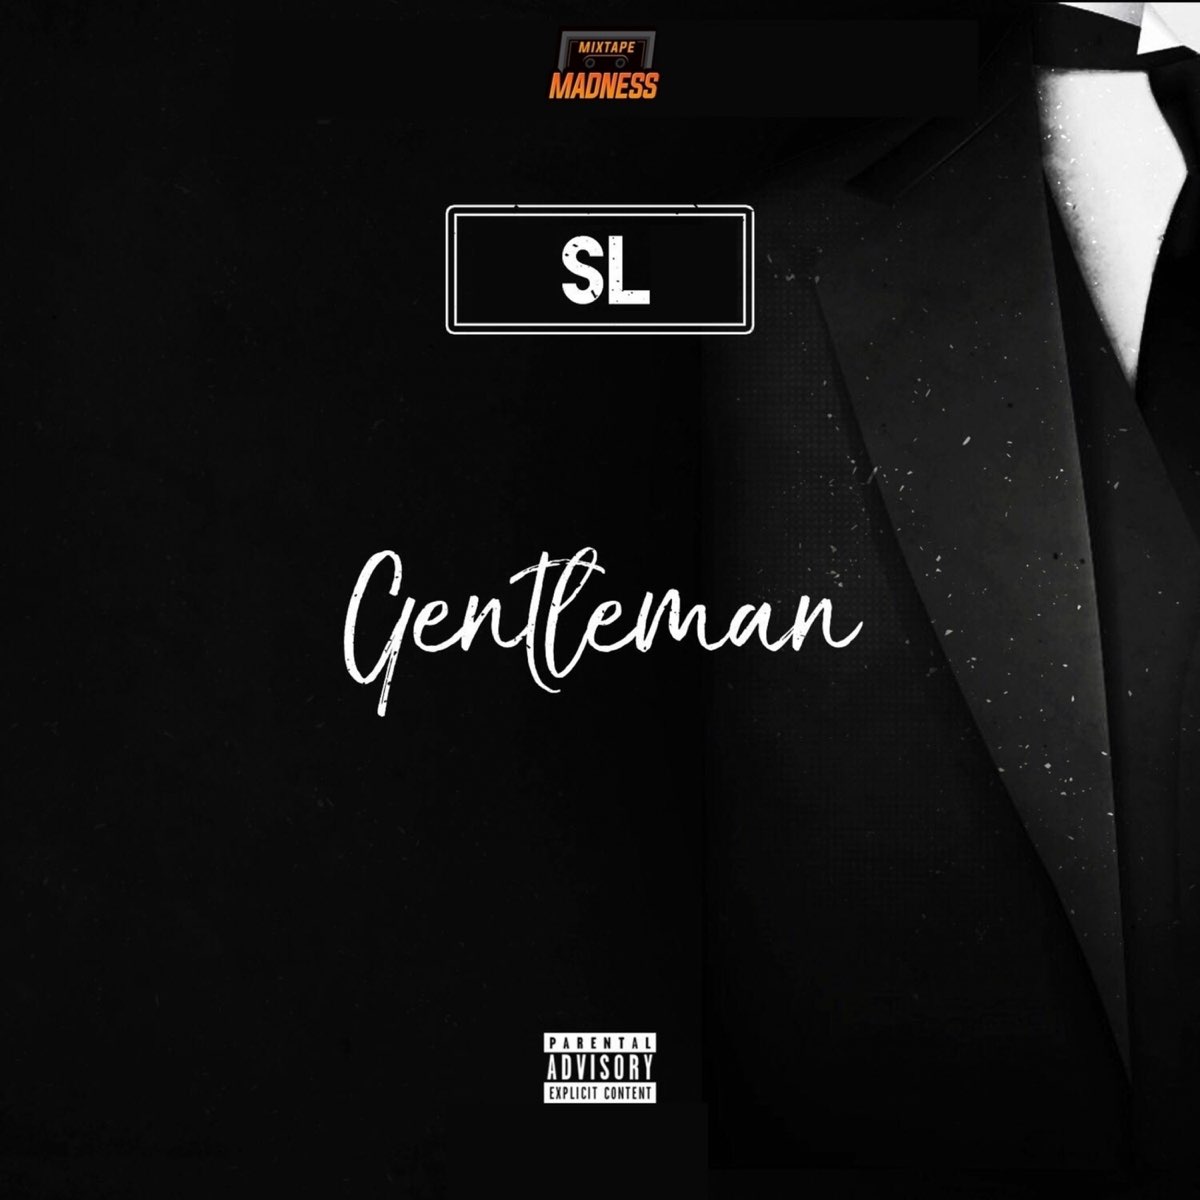 Слушать музыку джентльмен. SL Gentleman. Джентльмены обложка. Обложка песни Gentleman. Джентльмен сингл.